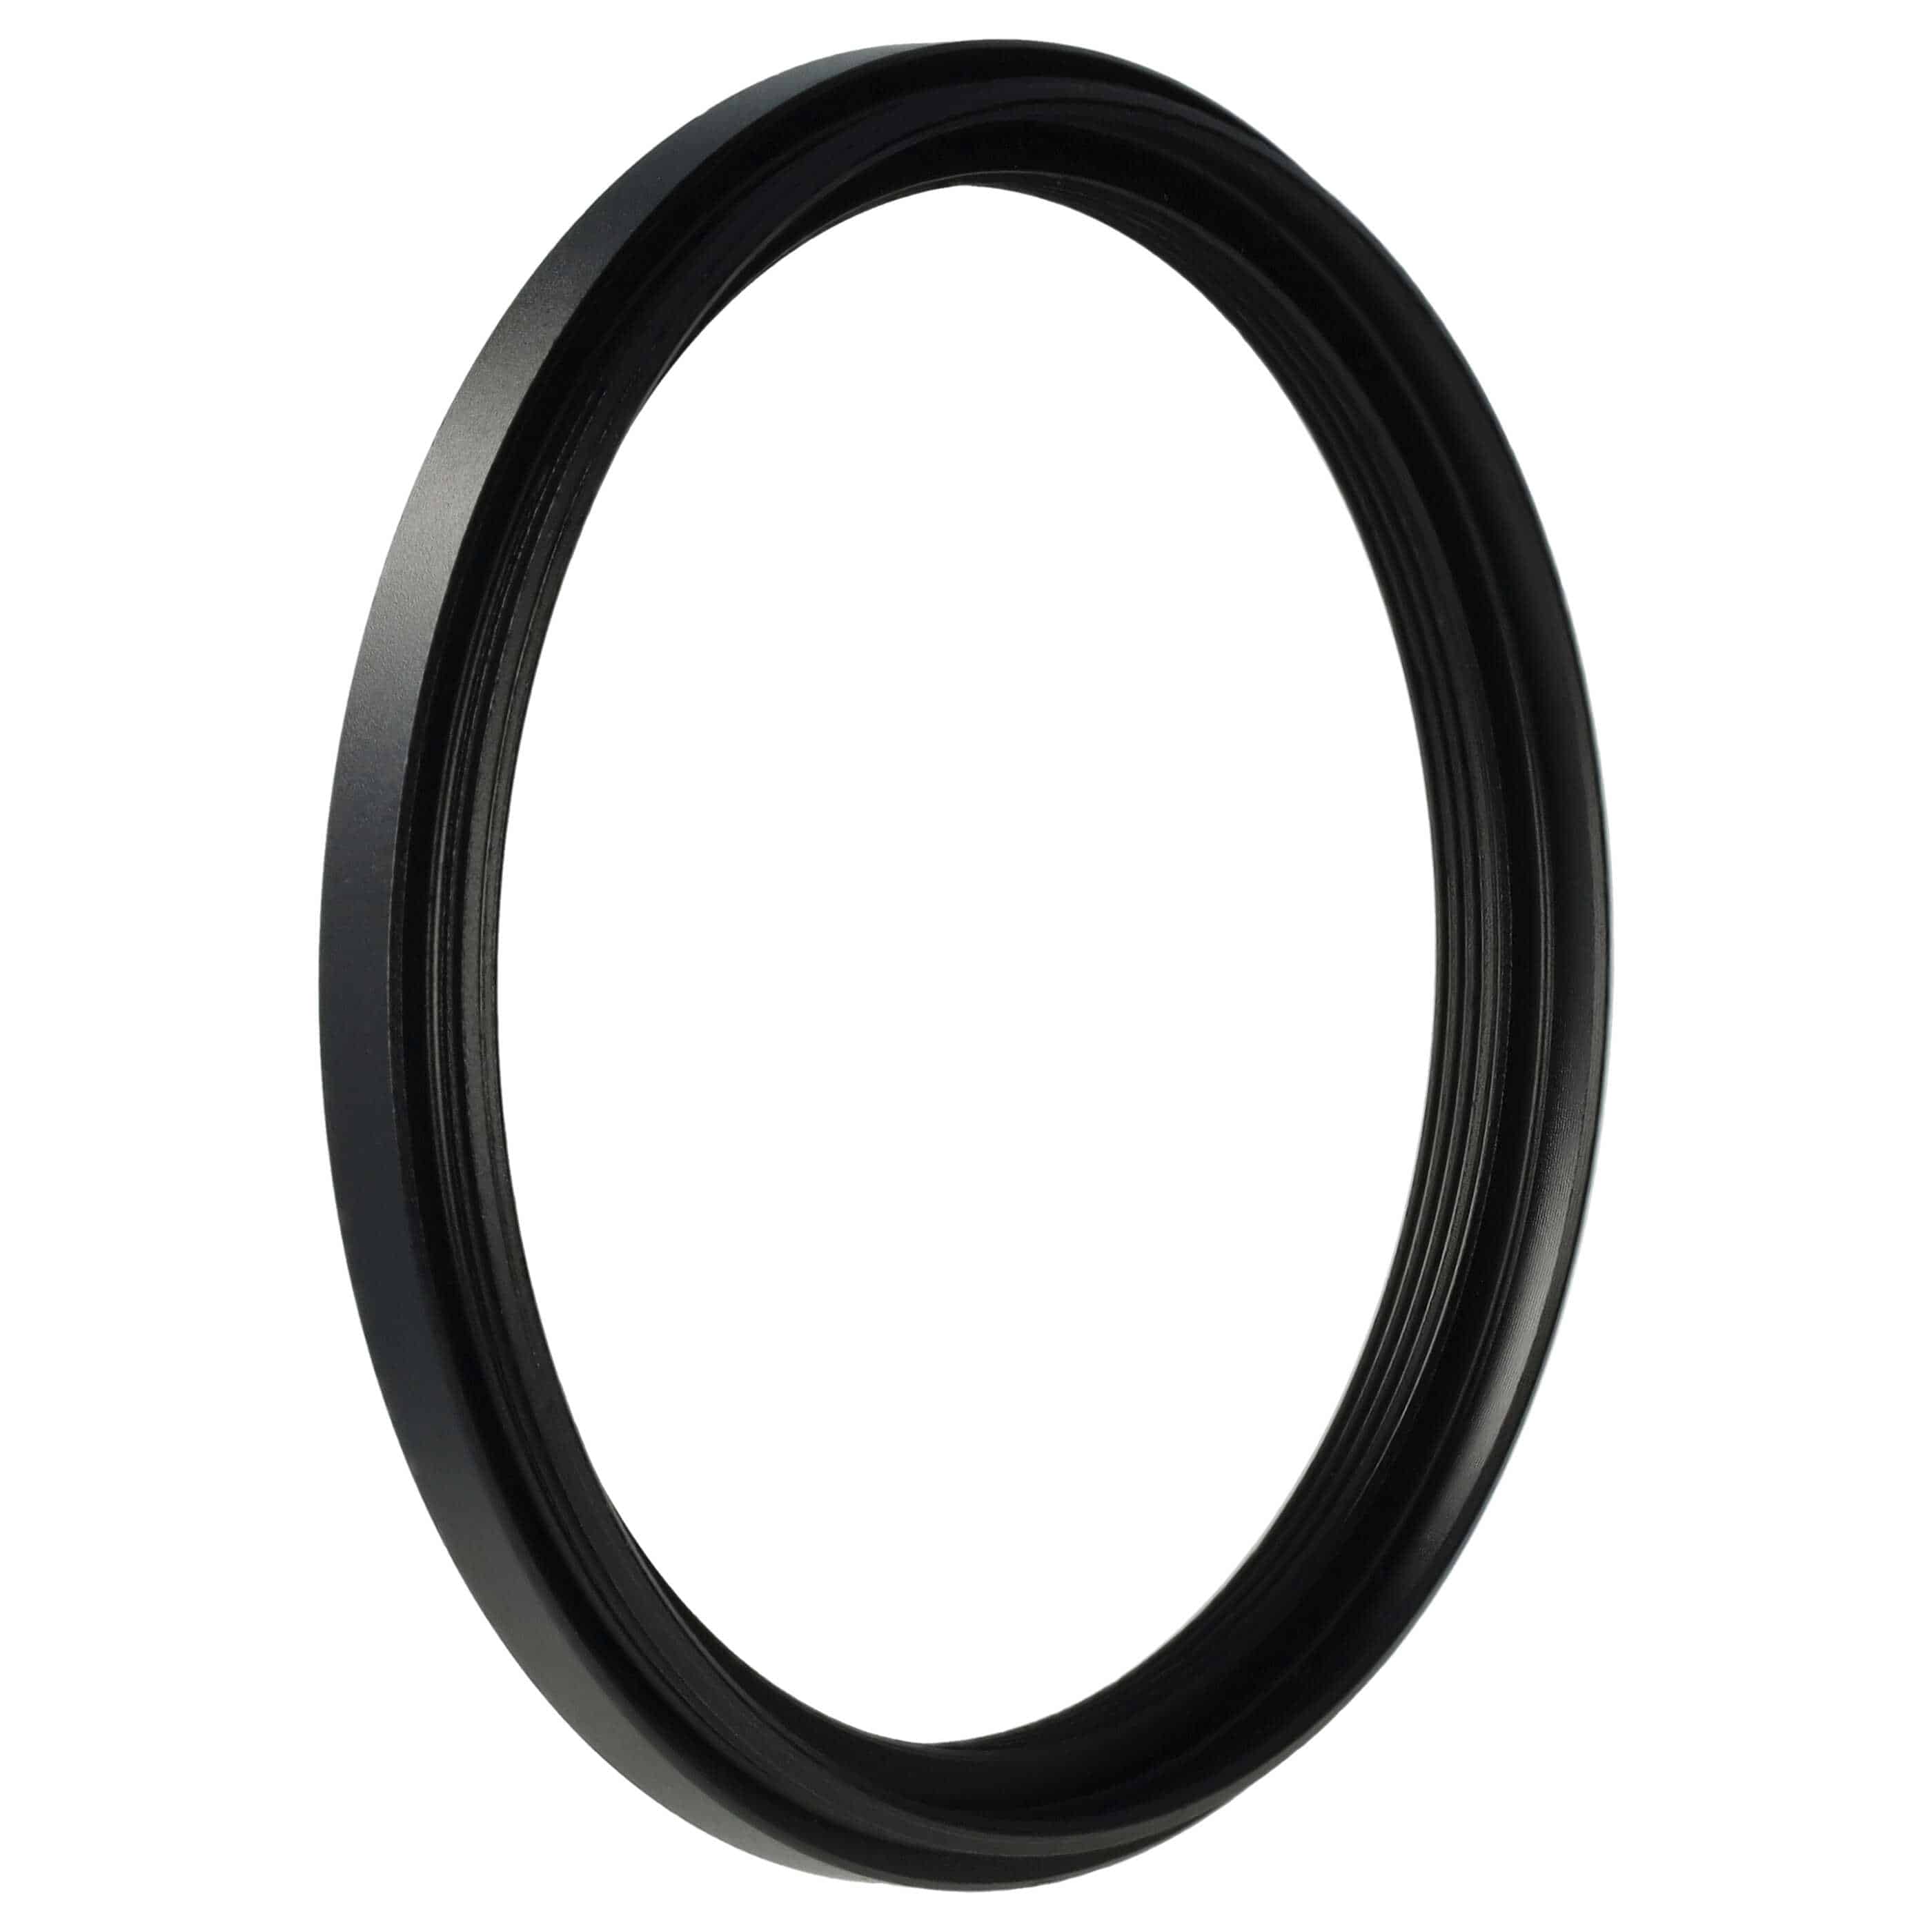 Redukcja filtrowa adapter Step-Down 62 mm - 55 mm pasująca do obiektywu - metal, czarny